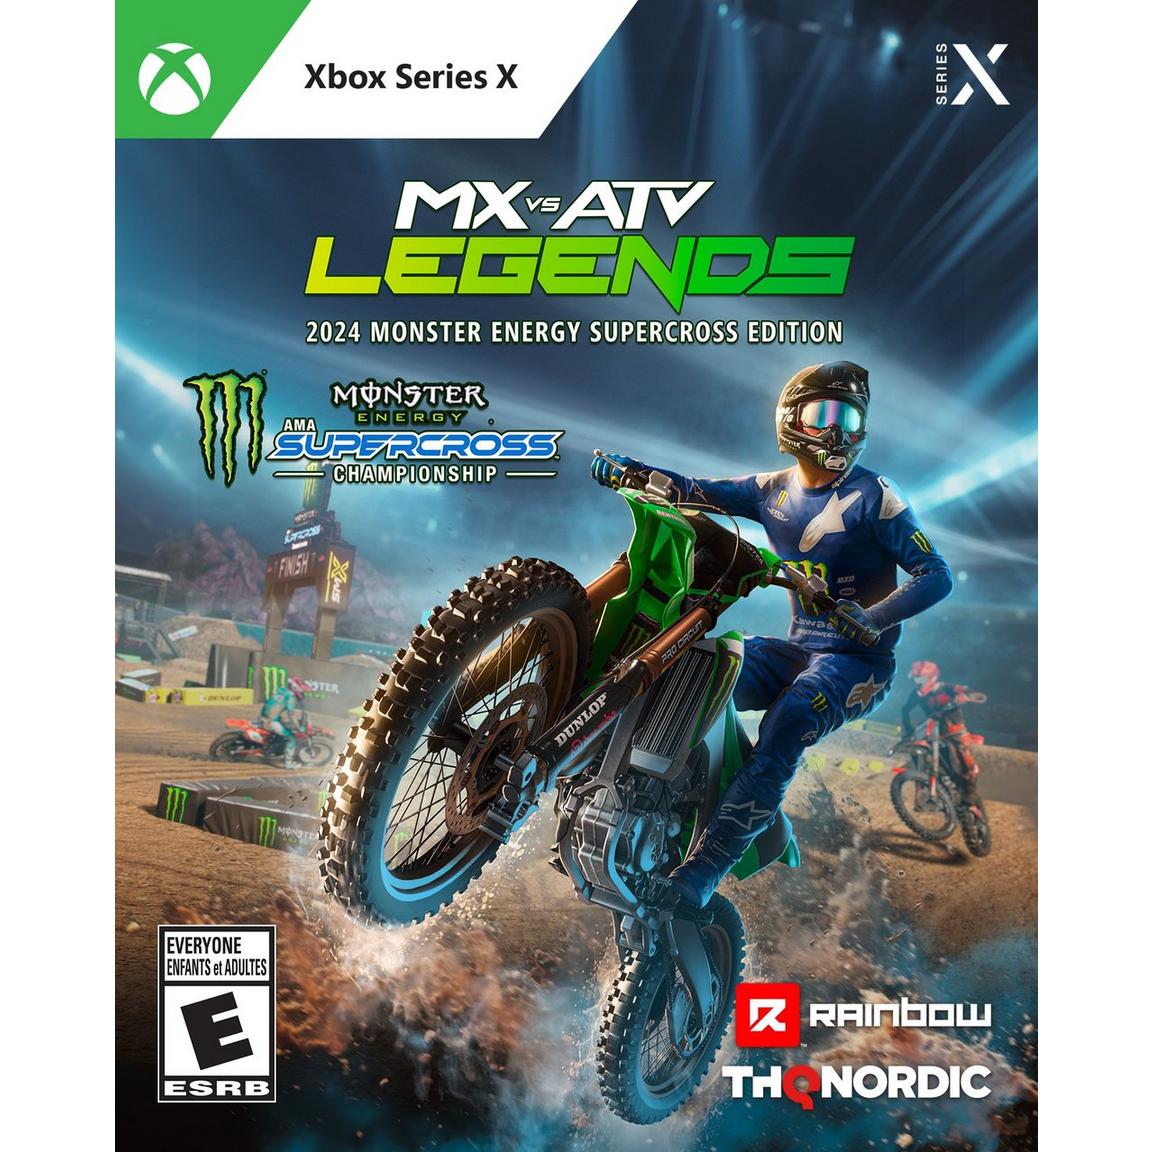 Видеоигра MX vs ATV Legends - 2024 Monster Energy Supercross Edition - Xbox Series X защитный резиновый подшипник для buyang 300 stels atv 300b 4 2 01 1030 lu019570 atv utv carry demon muddy 260 300 400